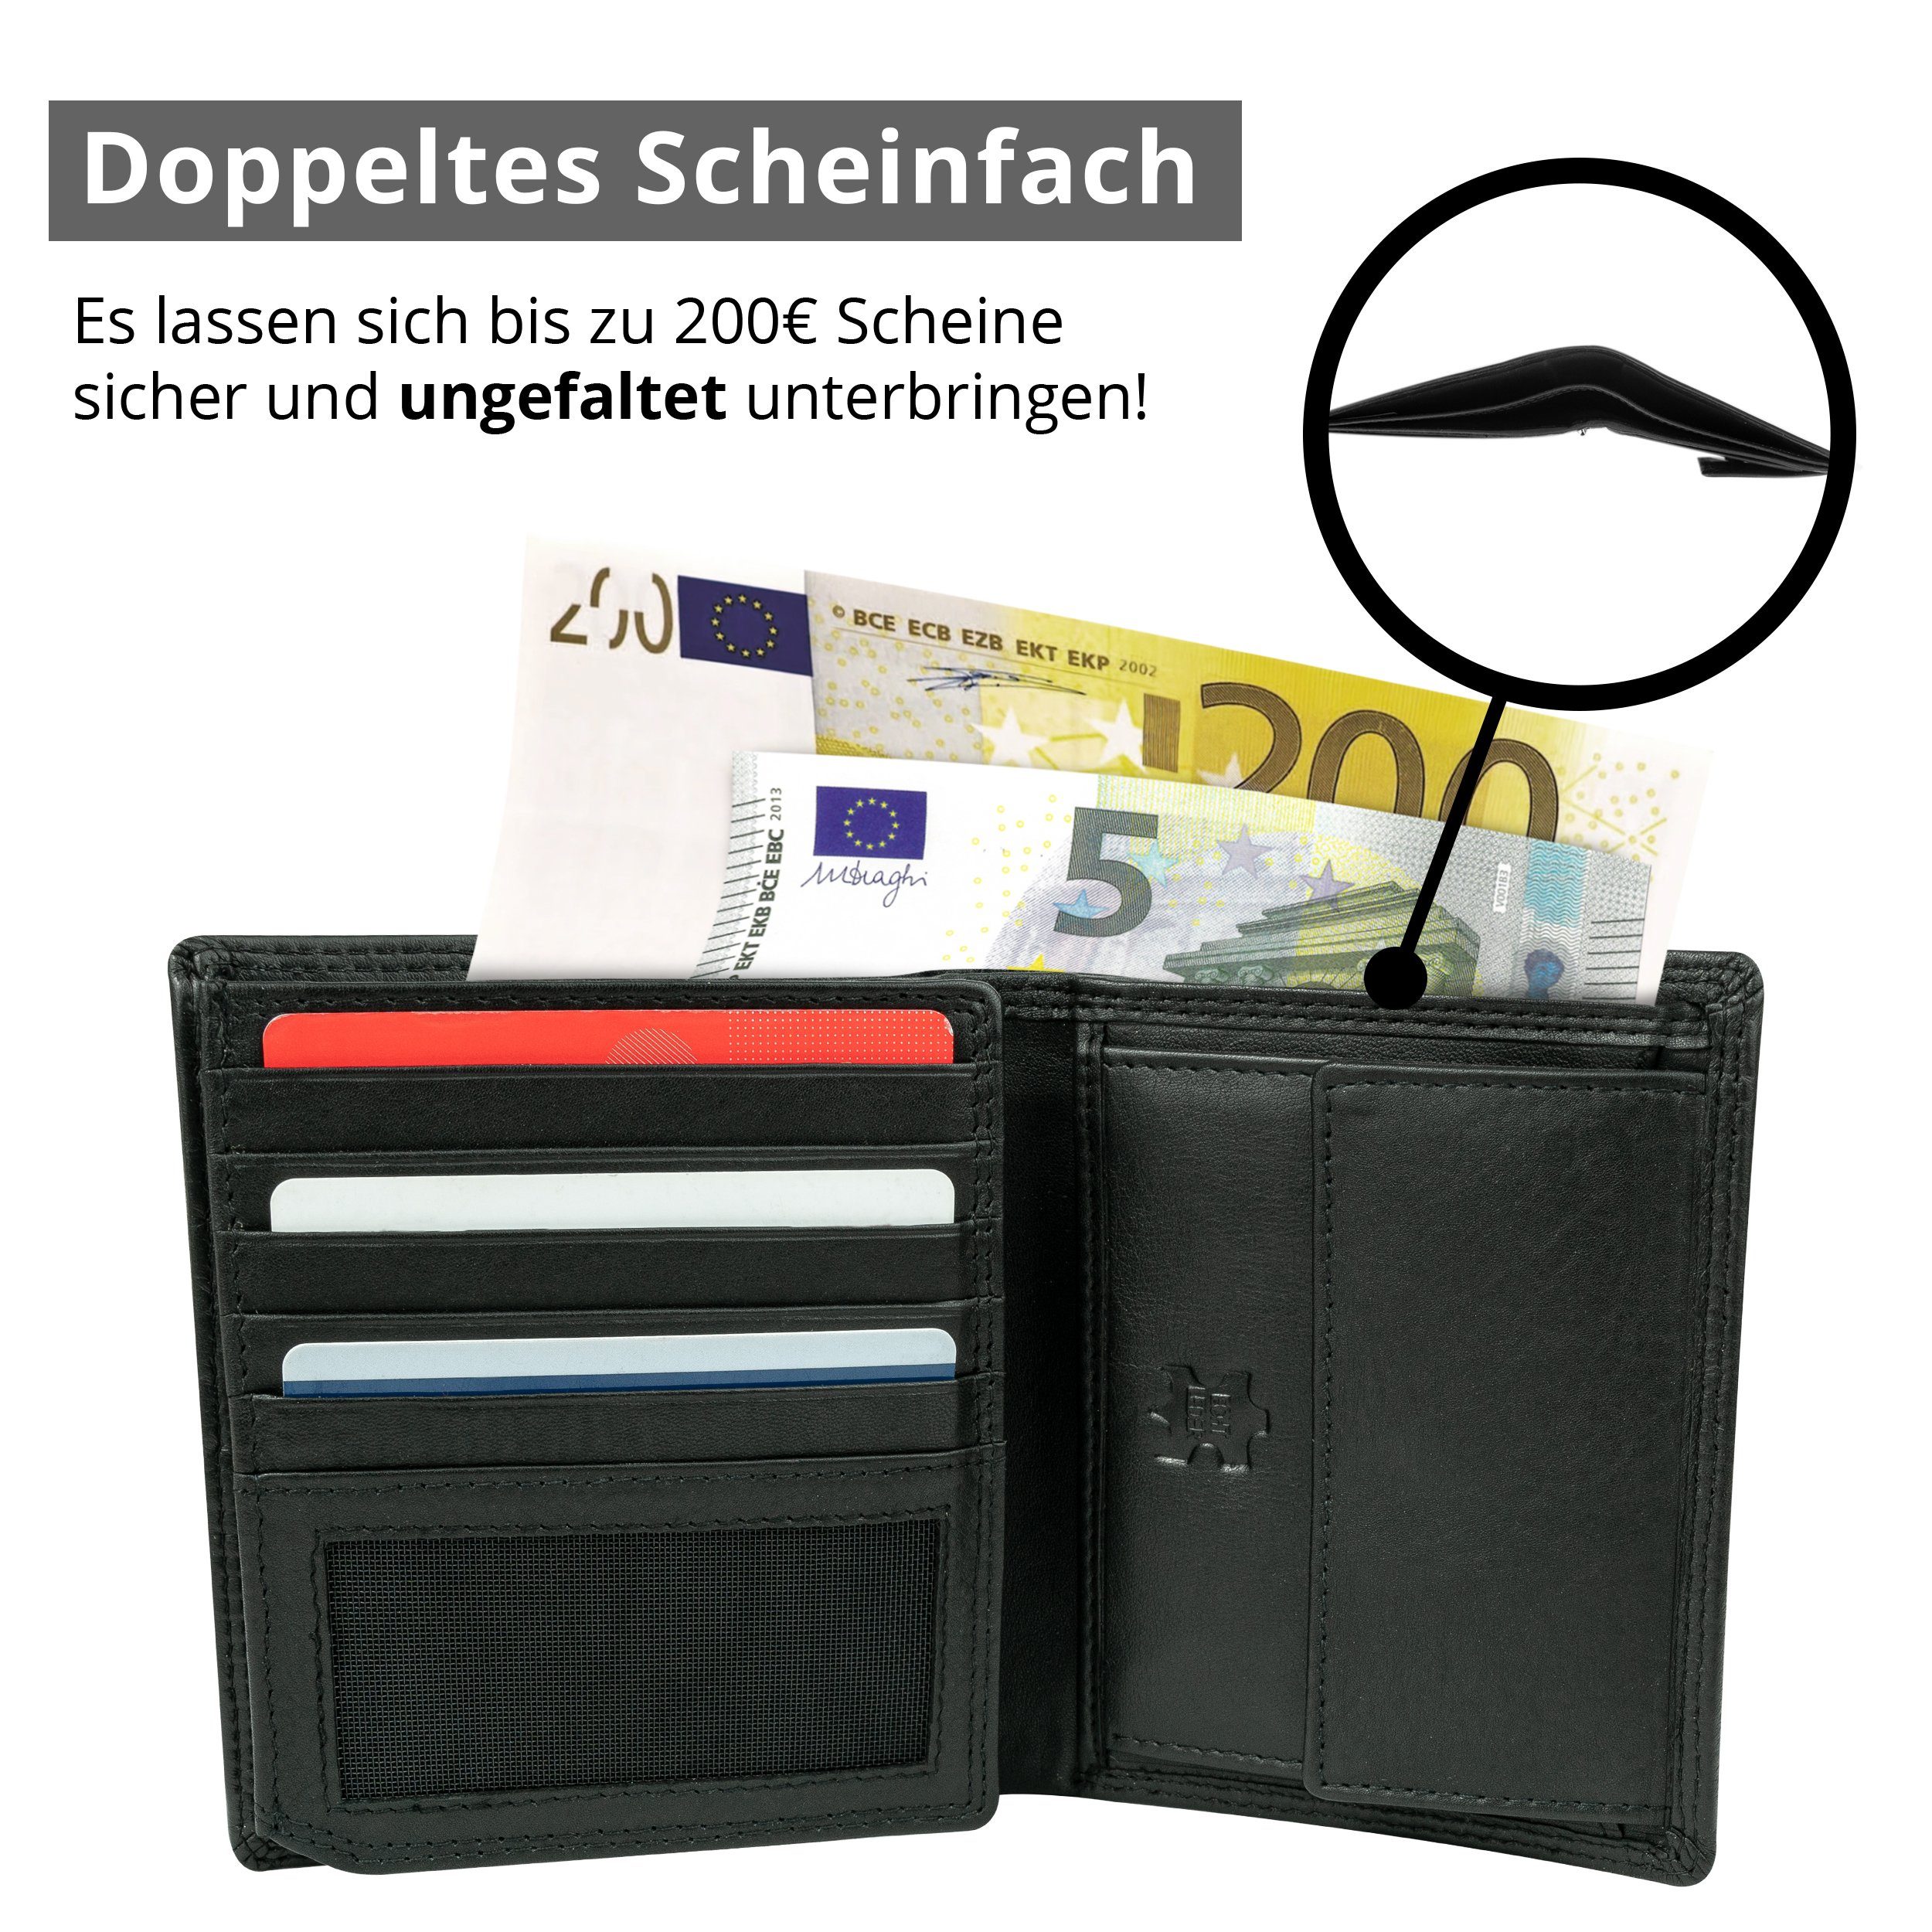 MOKIES Portemonnaie Premium Geschenkbox 100% RFID-/NFC-Schutz, Nappa-Leder, GN105 (hochformat), Nappa Geldbörse Premium Herren Echt-Leder,